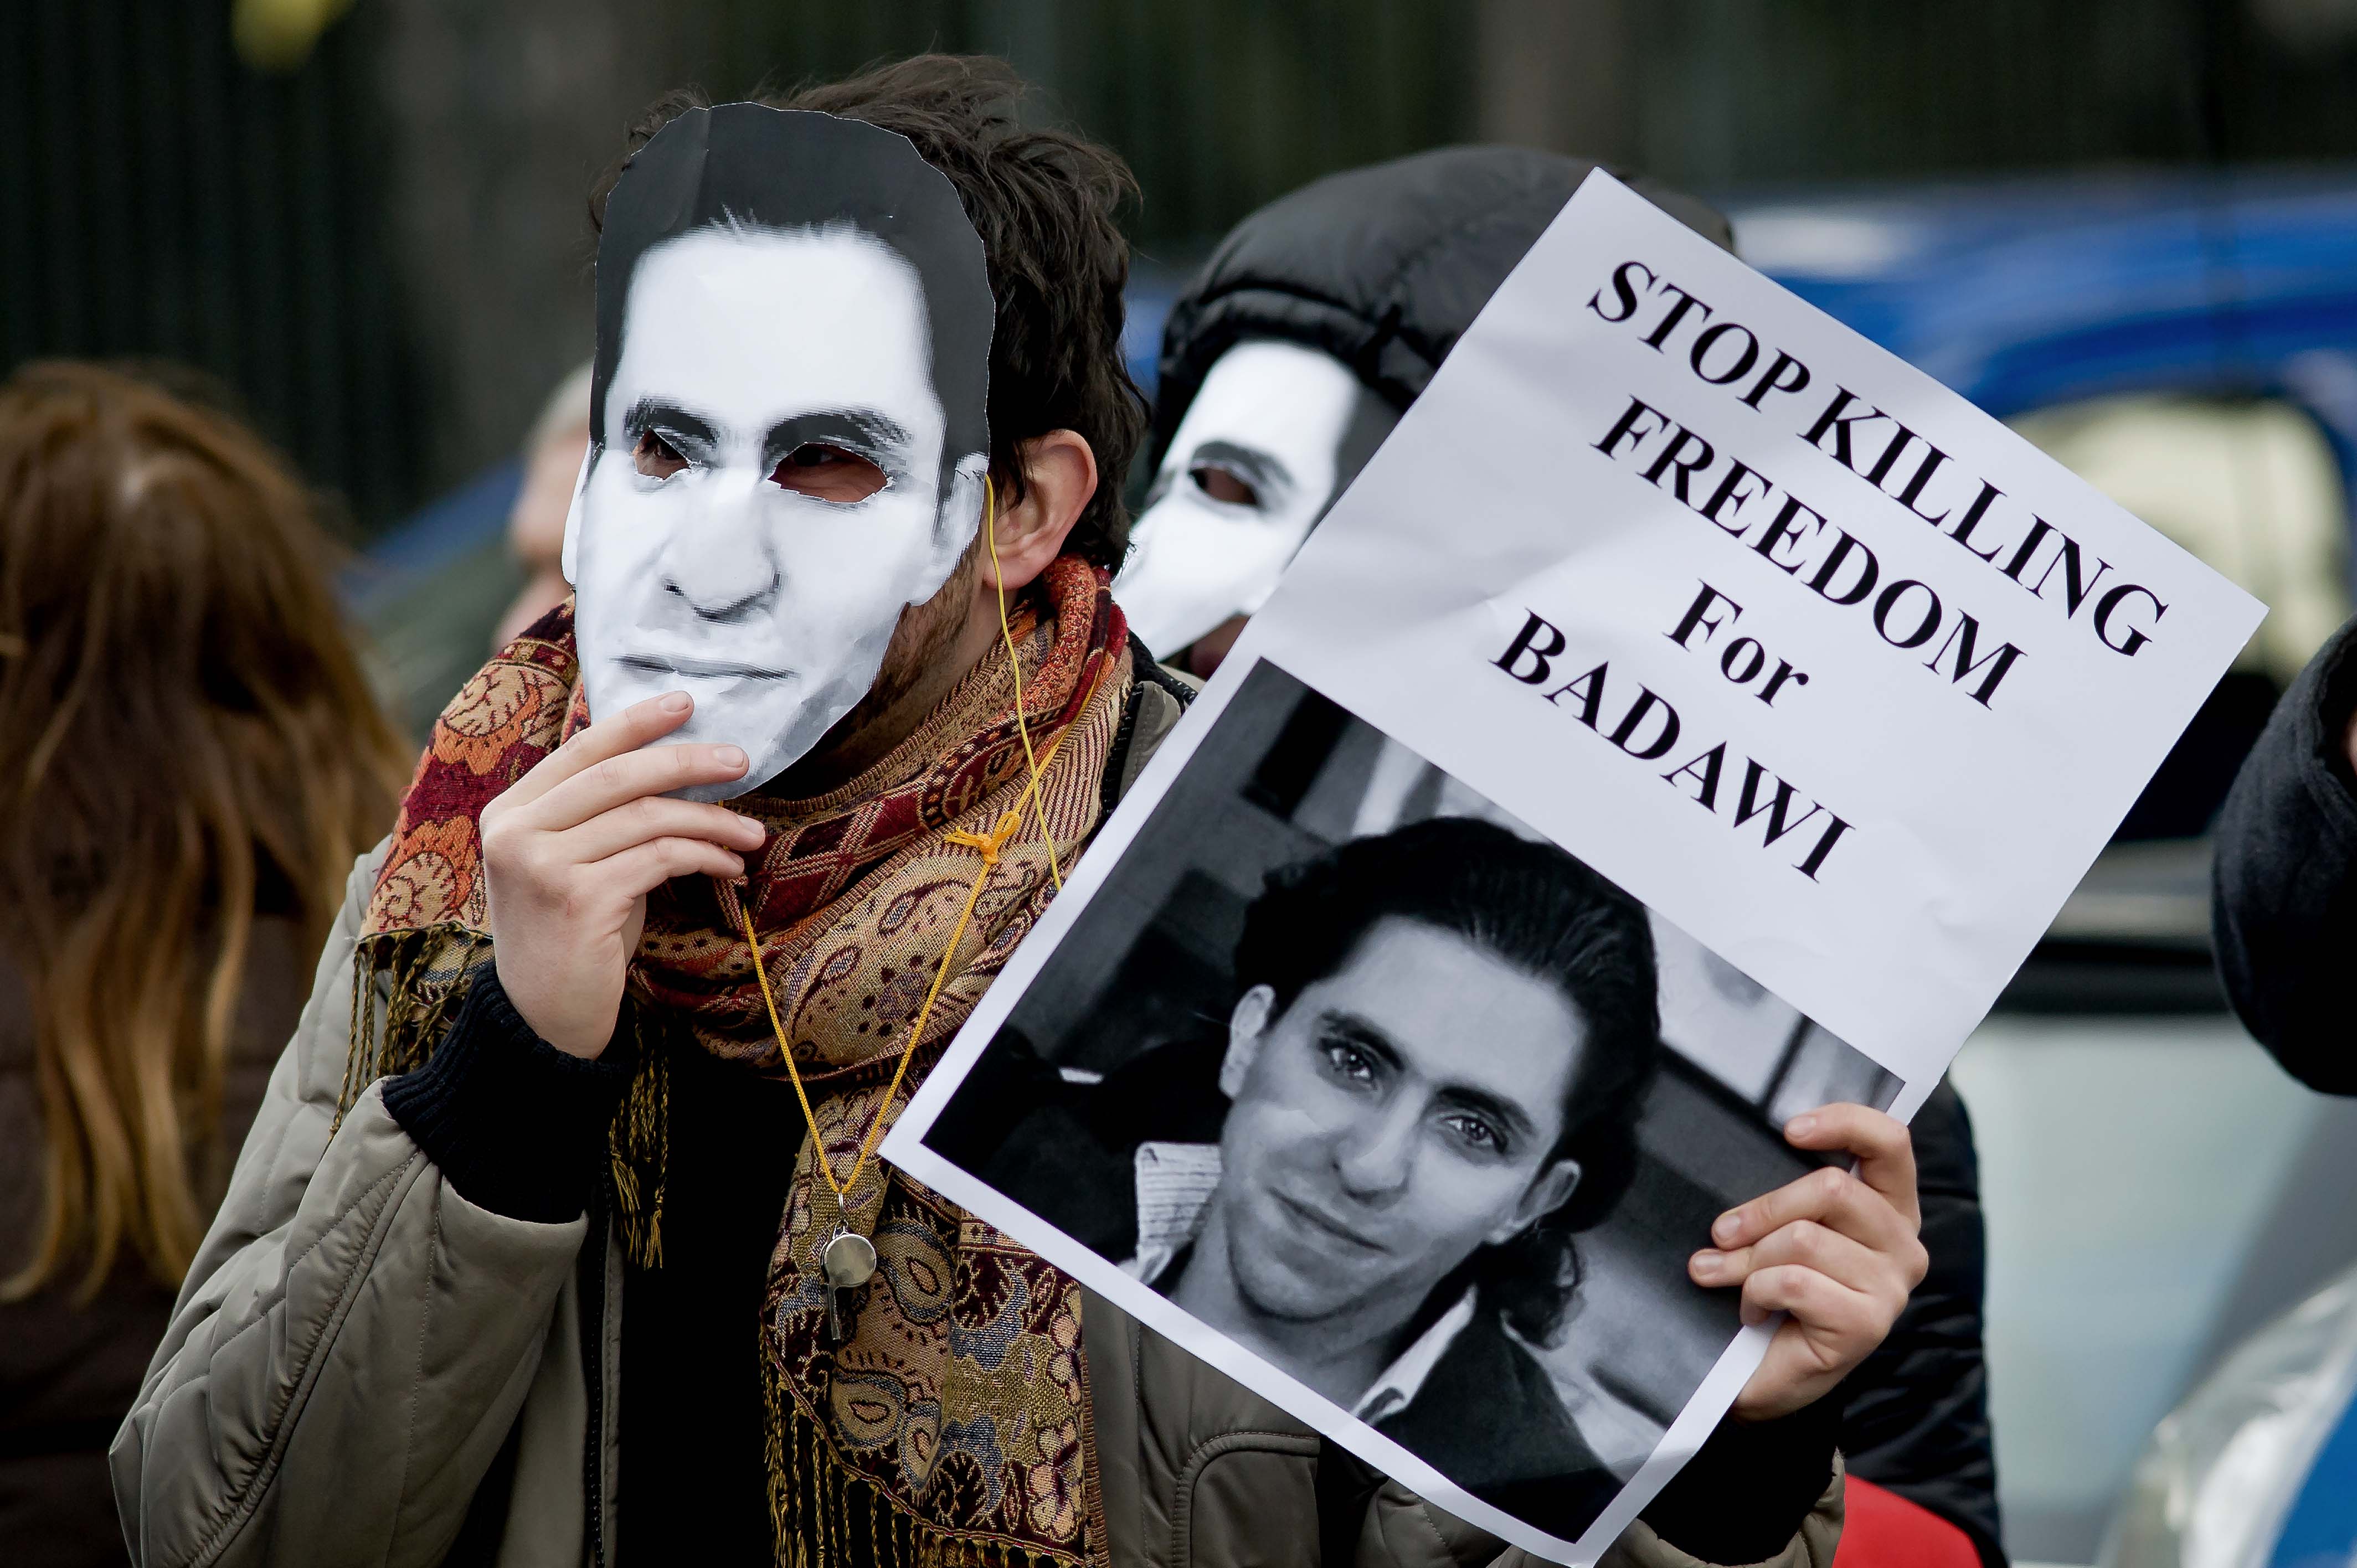 Rome, Italie. 9 Janvier 2014 - Des manifestants avec des masques de Raif Badawi à un sit-in devant l'ambassade d'Arabie saoudite pour protester contre la flagellation du blagueur en exigeant sa libération immédiate. Photographie par Stefano Montesi. Copyright: Demotix